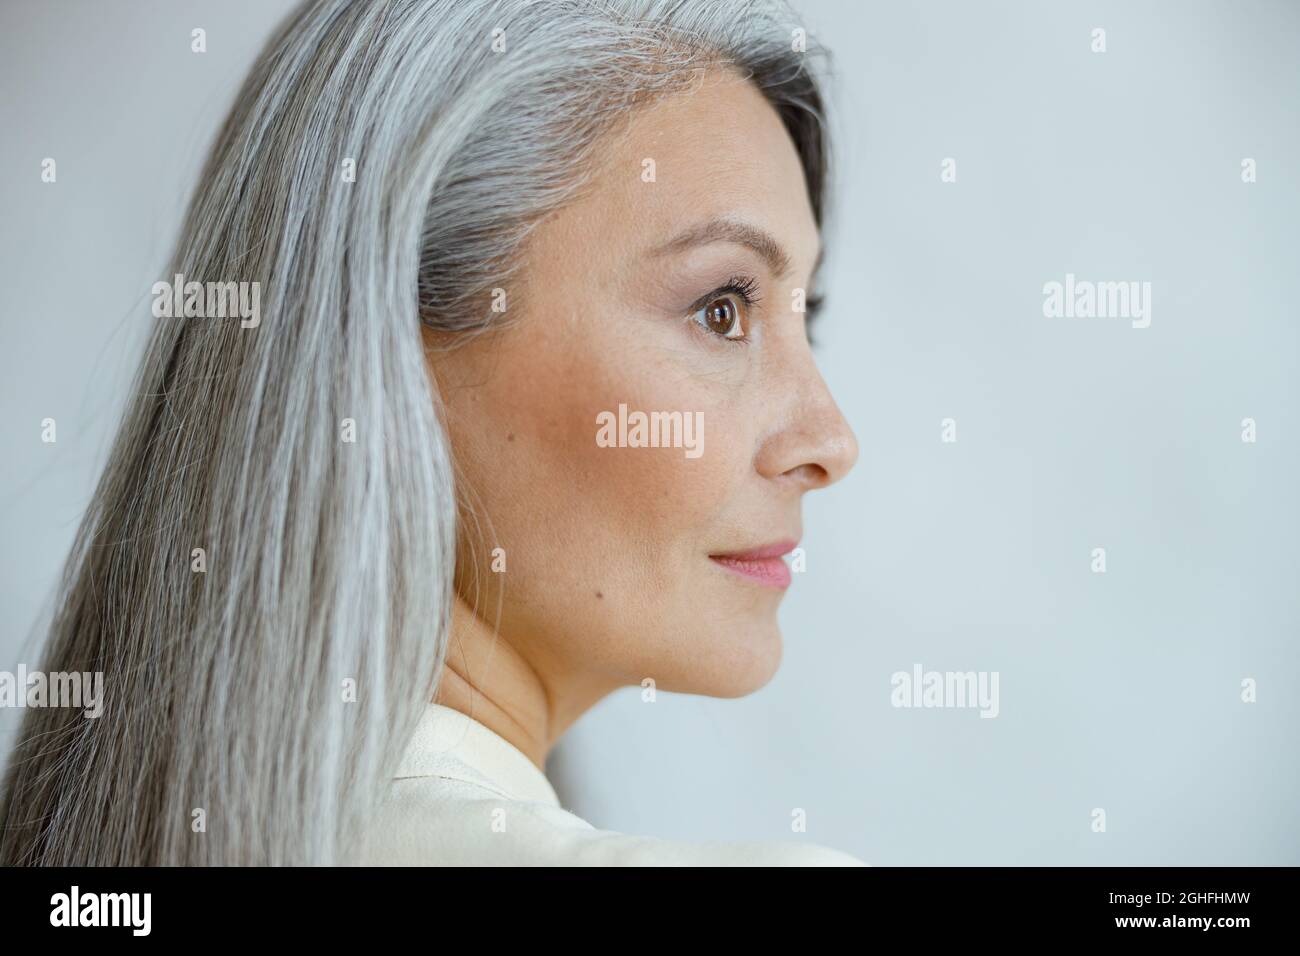 Asiatische Frau mittleren Alters mit schönen geraden Hufhaar auf hellgrauem Hintergrund Stockfoto